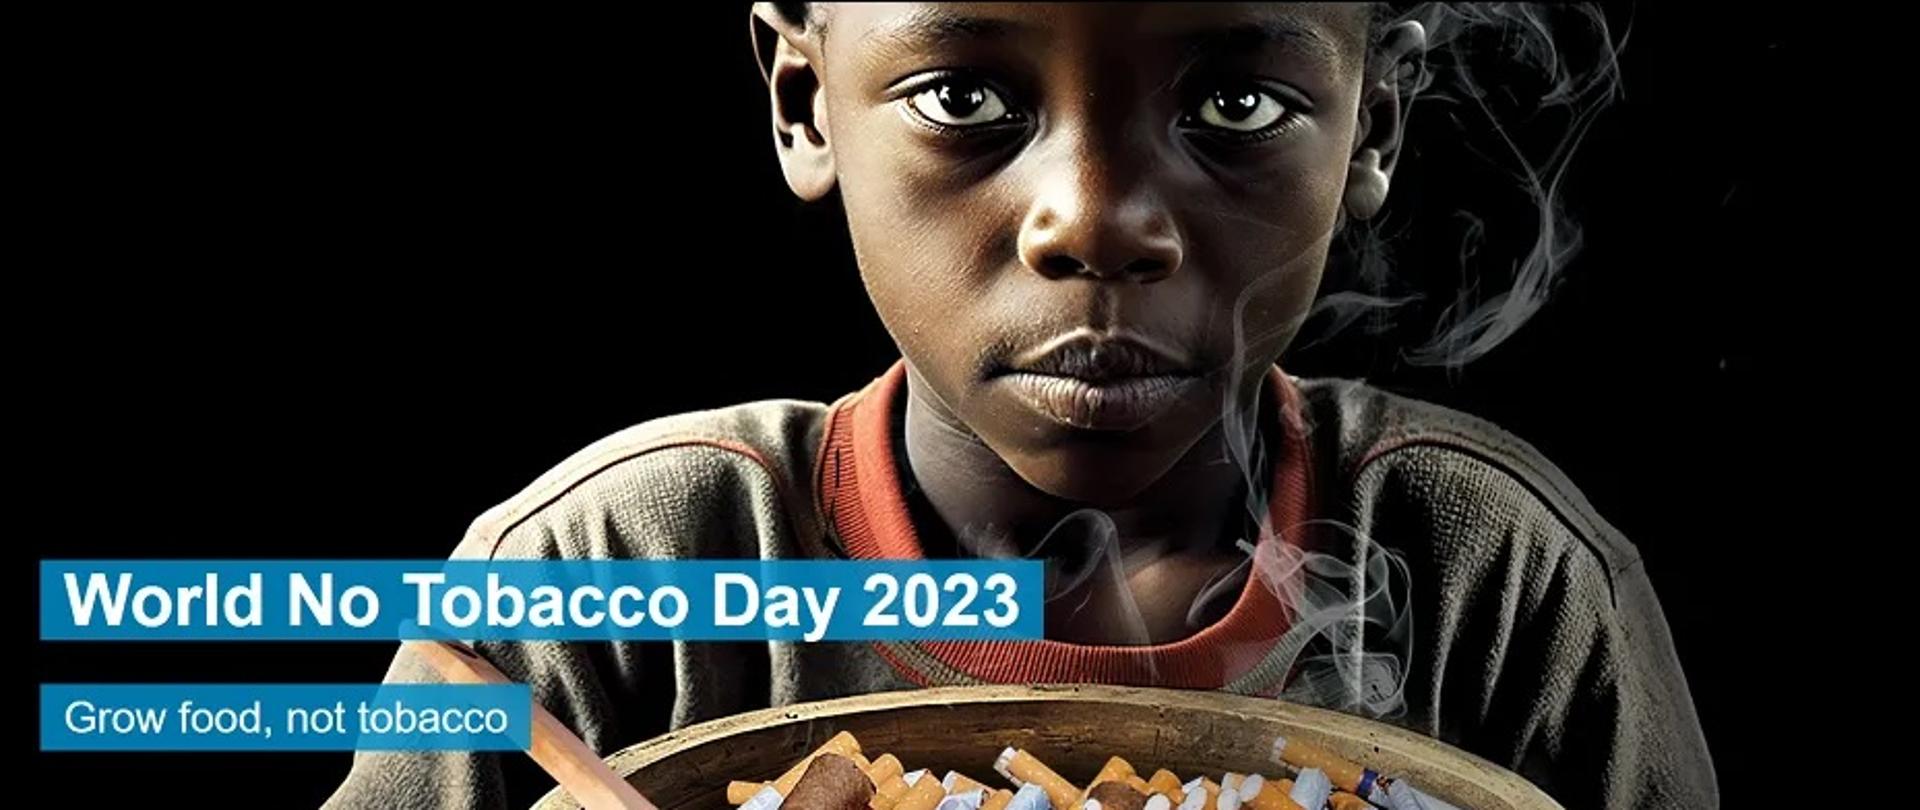 baner z napisem World No Tobacco Day 2023, Grow food, not tobacci. Na obrazku widzimy dziecko trzymajajace miske z papierosami